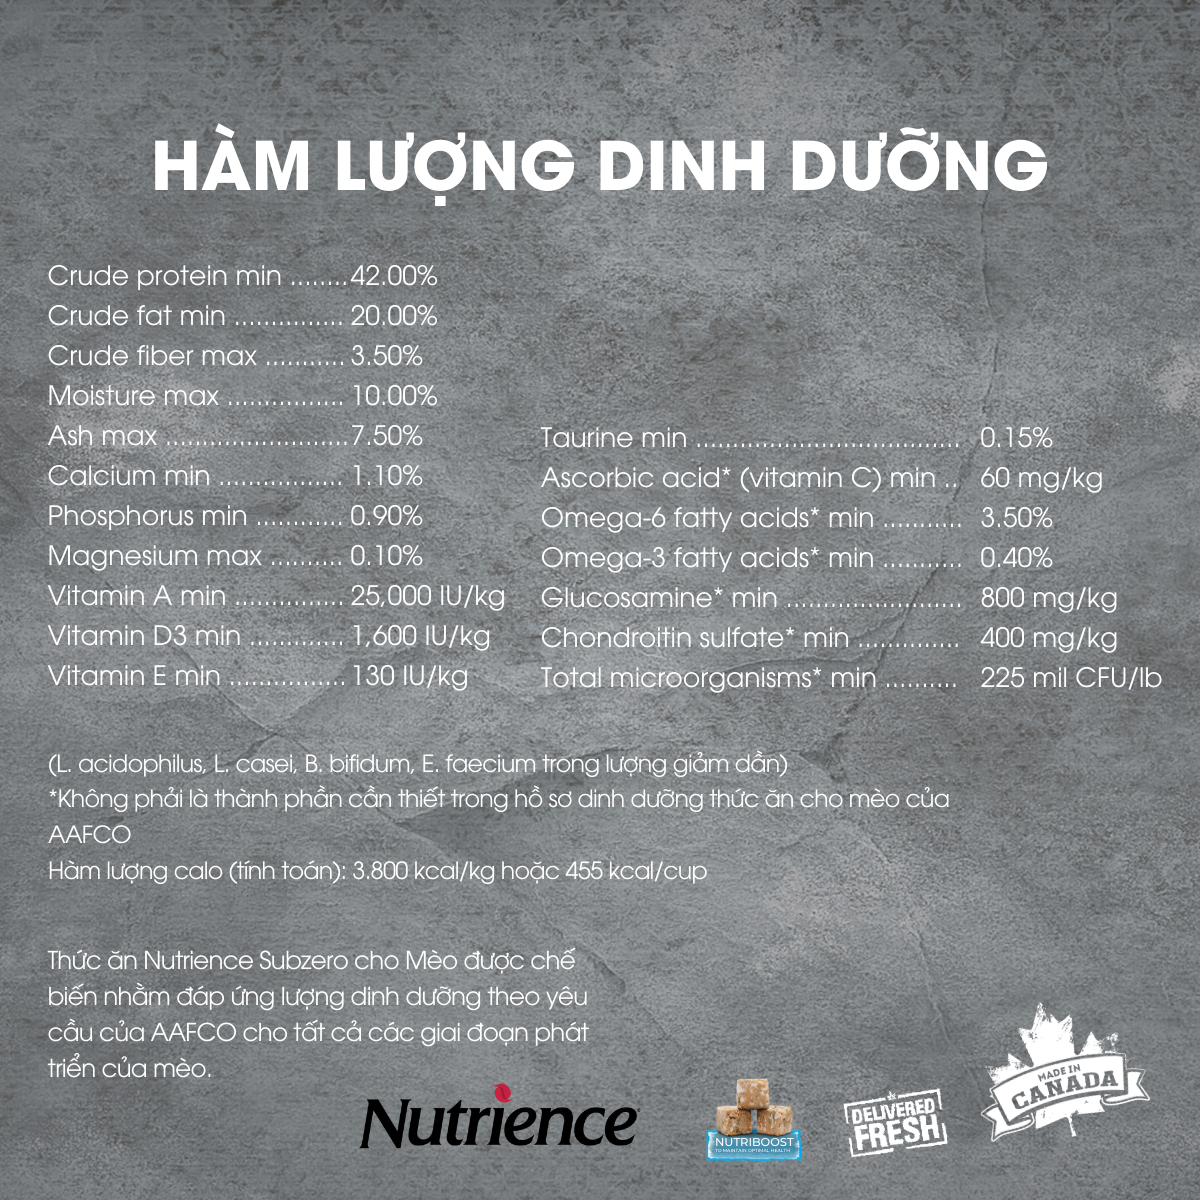  Thức Ăn Hạt Cho Mèo Nutrience Subzero Bao 5kg - Thịt Gà, Cá Hồi, Cá Tuyết, Rau Củ, Trái Cây Tự Nhiên